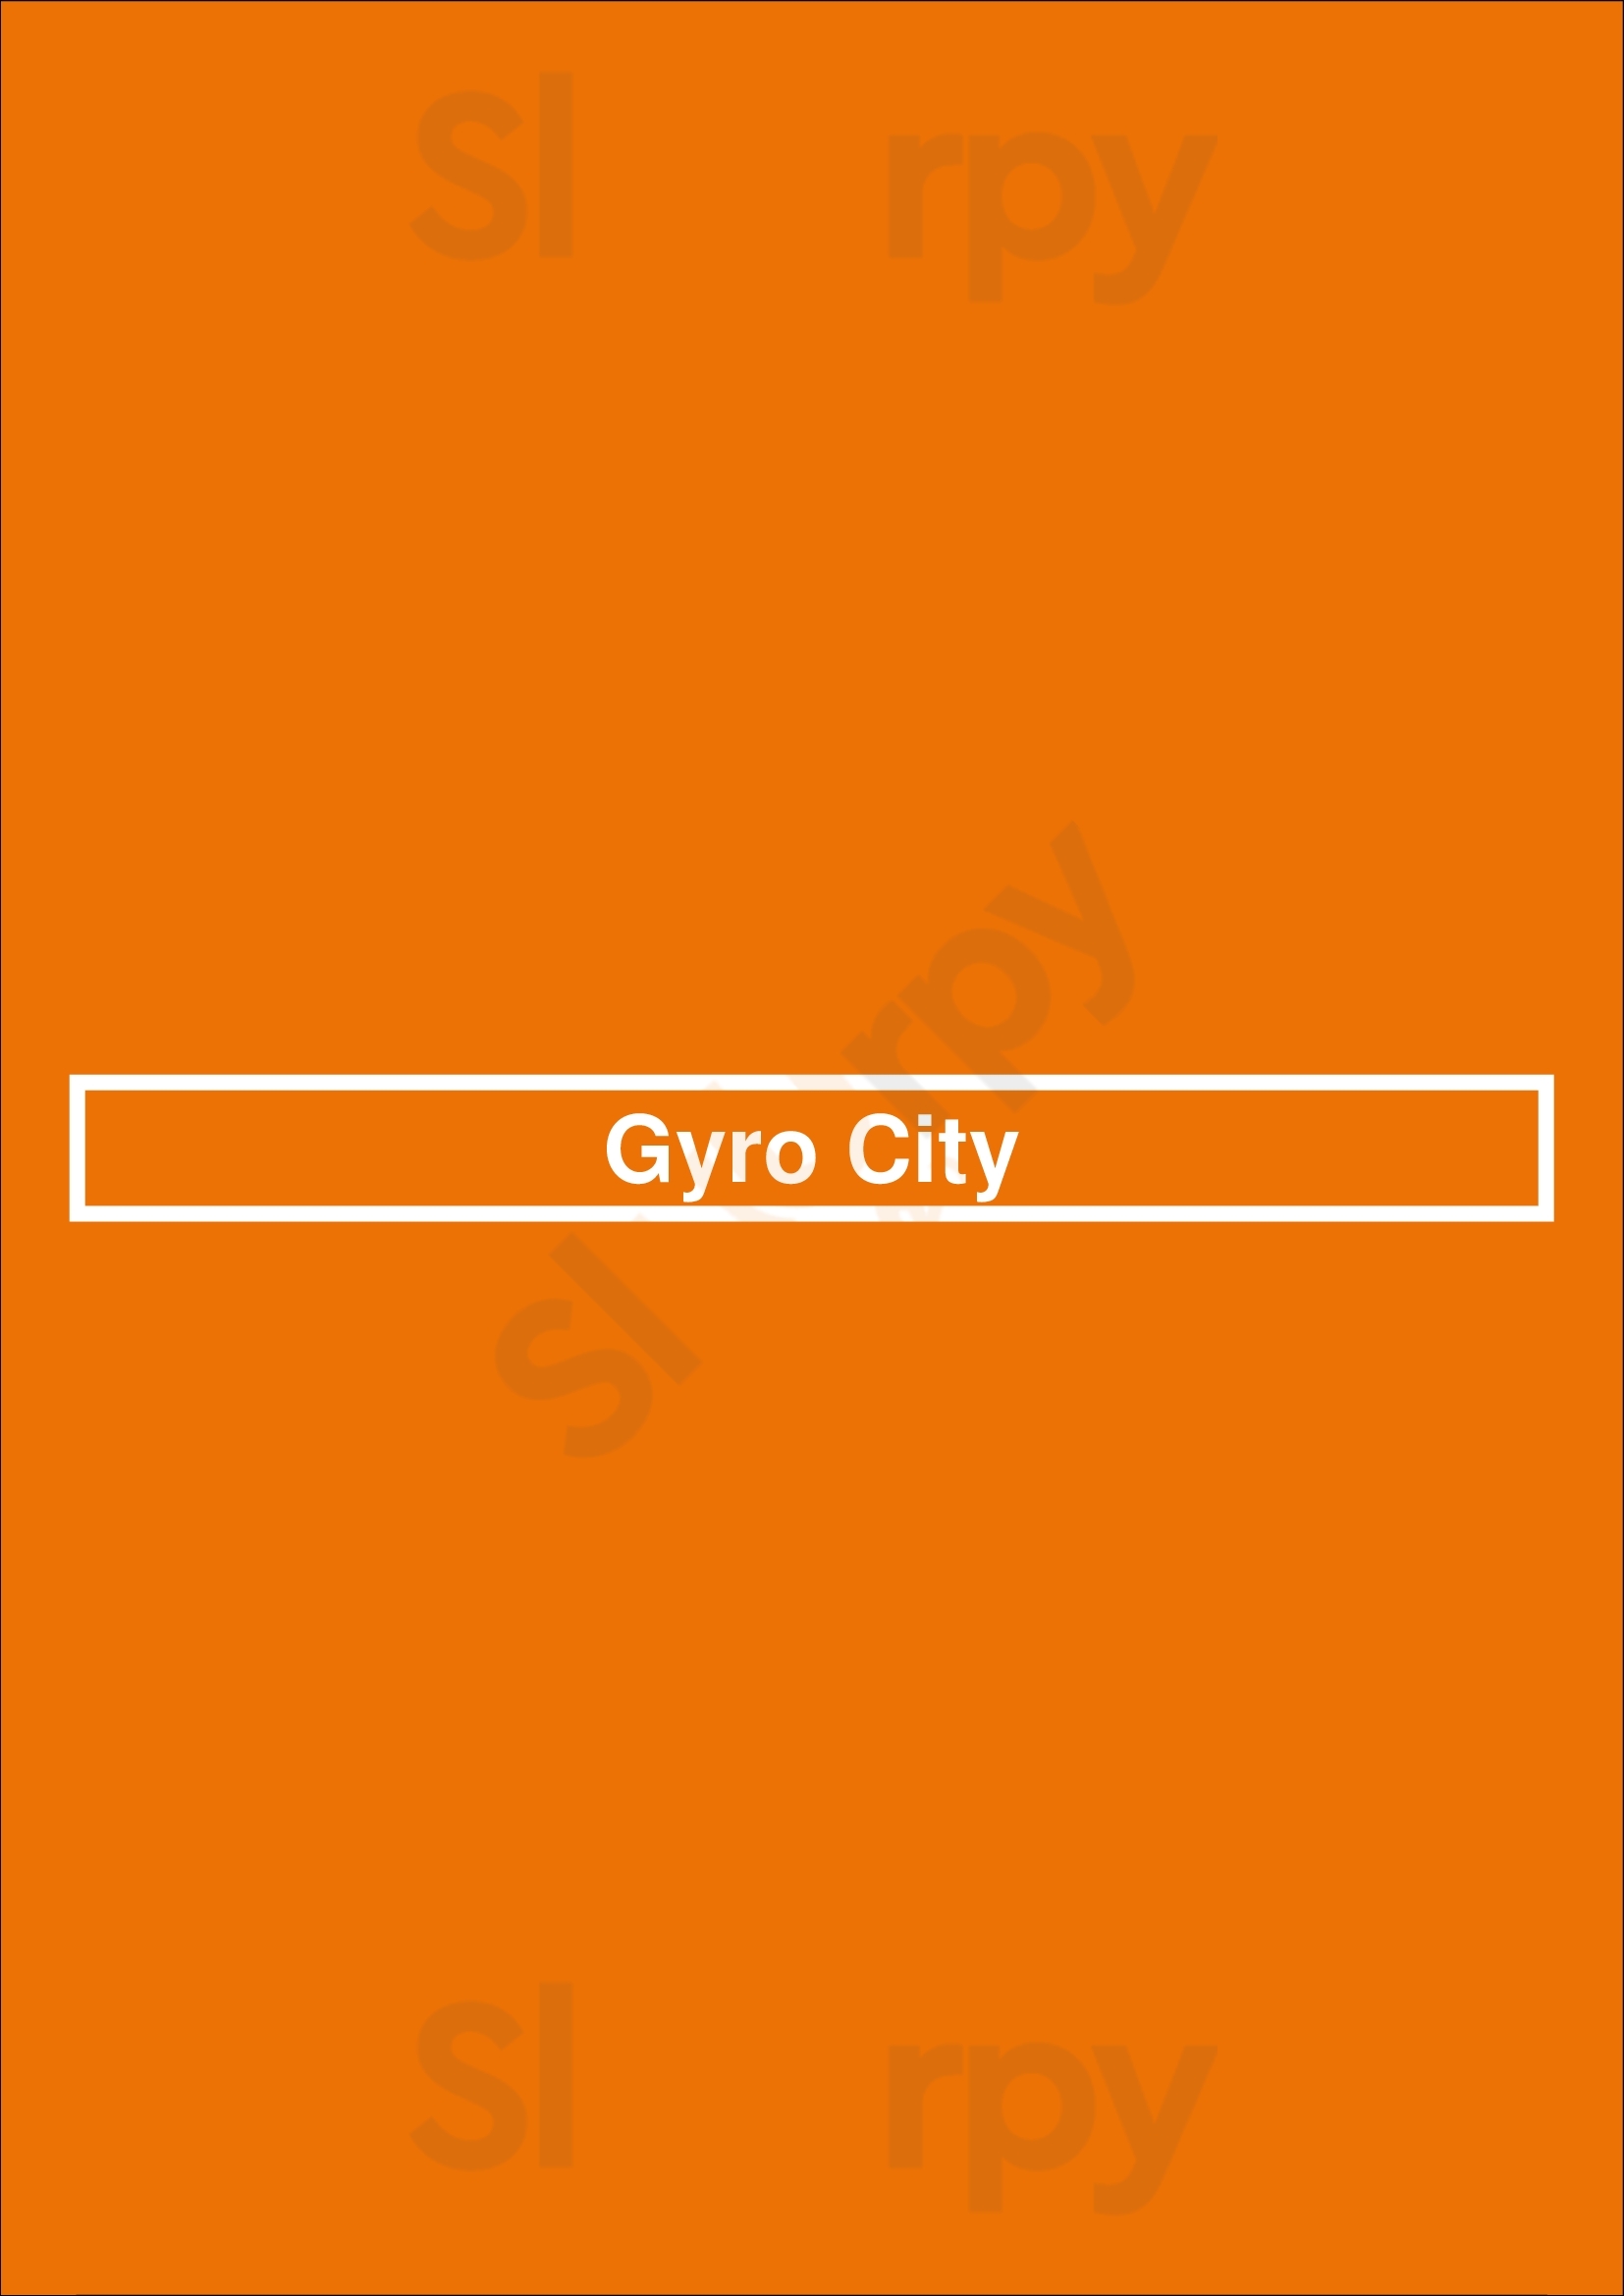 Gyro City Boston Menu - 1